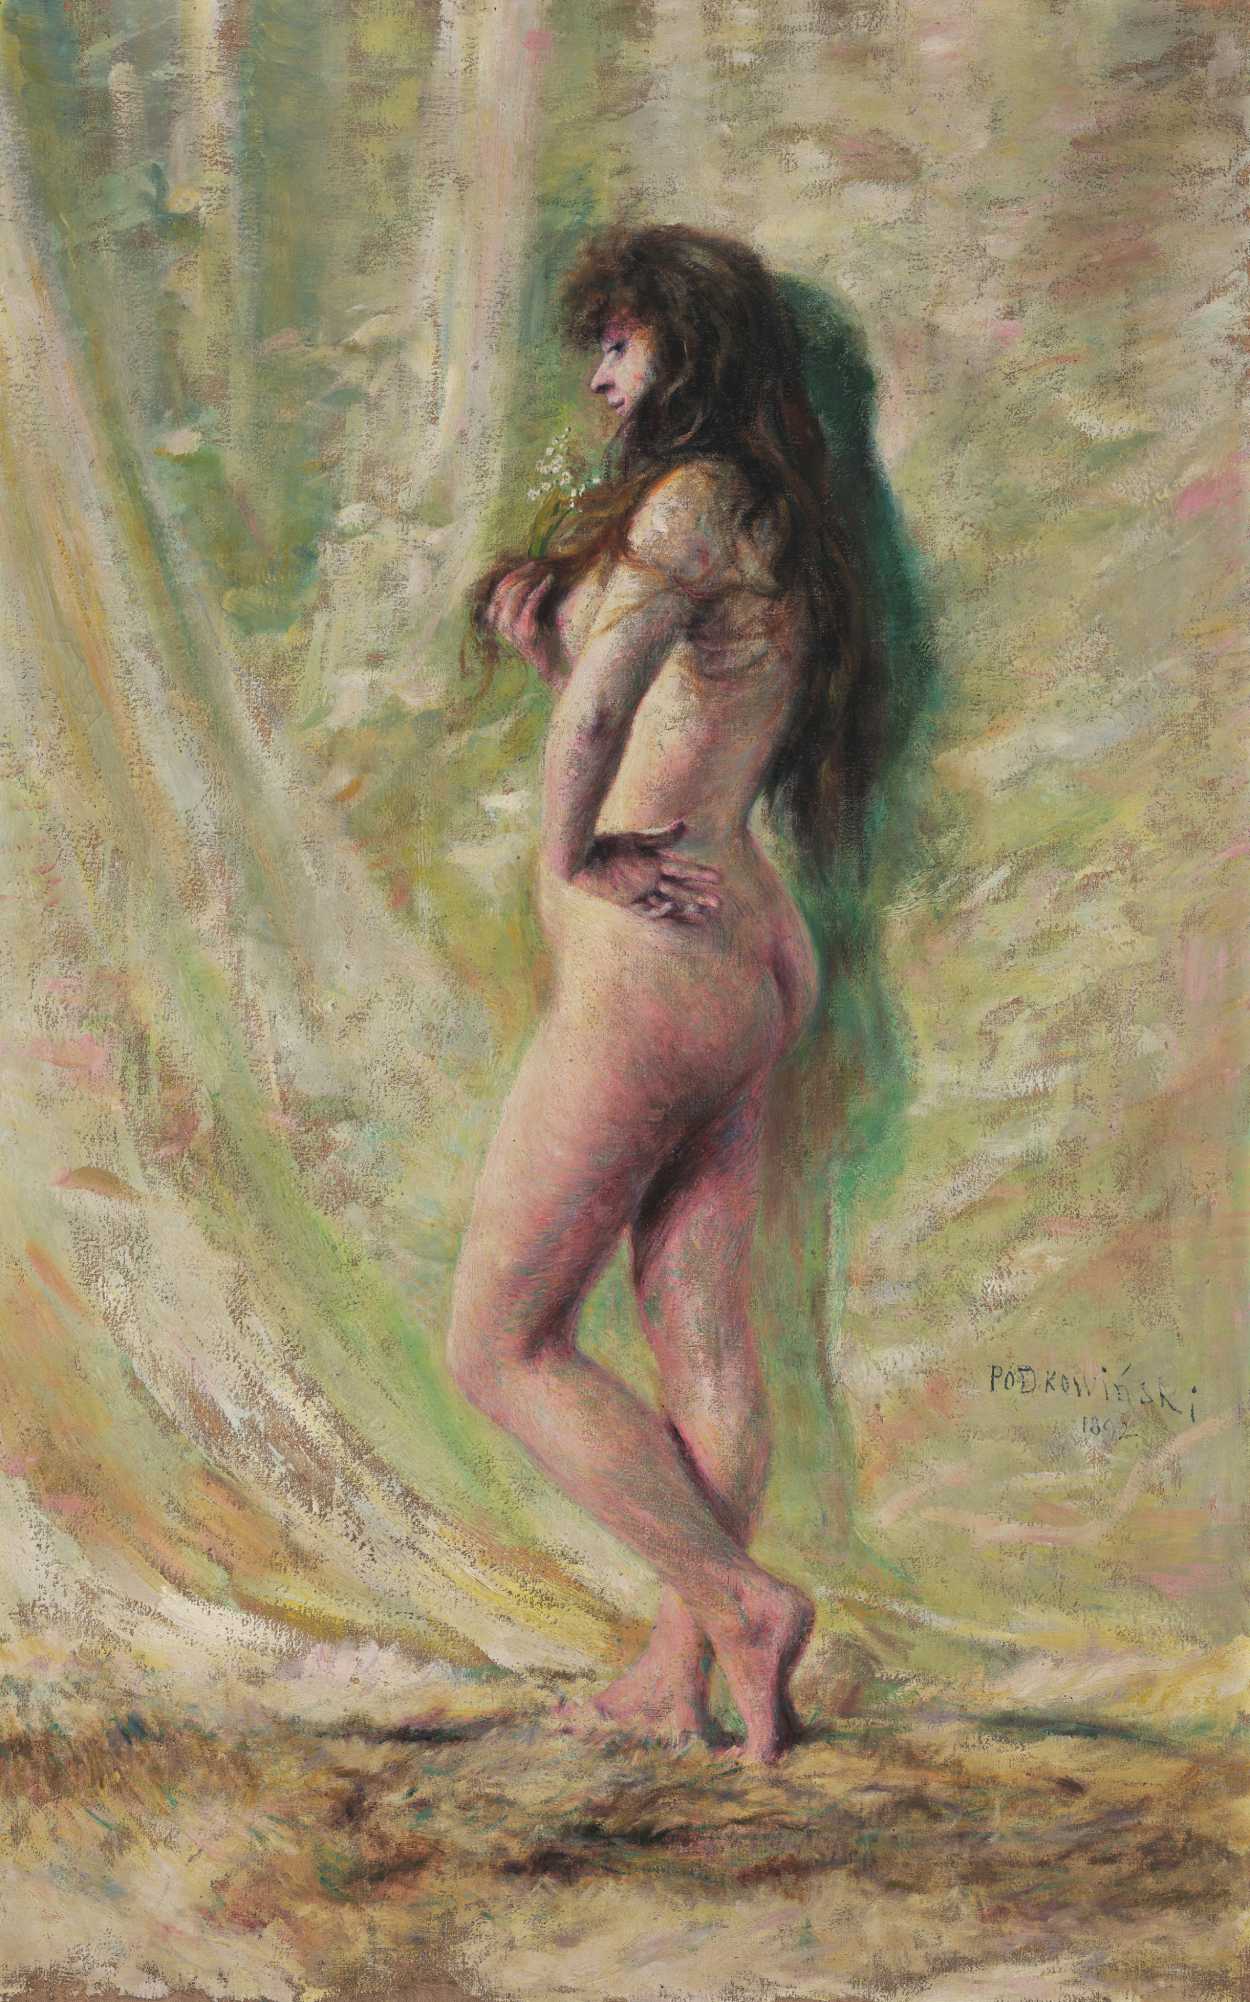 铃兰 by 瓦迪斯瓦夫· 波德科温斯基 - 1892 - 141 x 90 厘米 